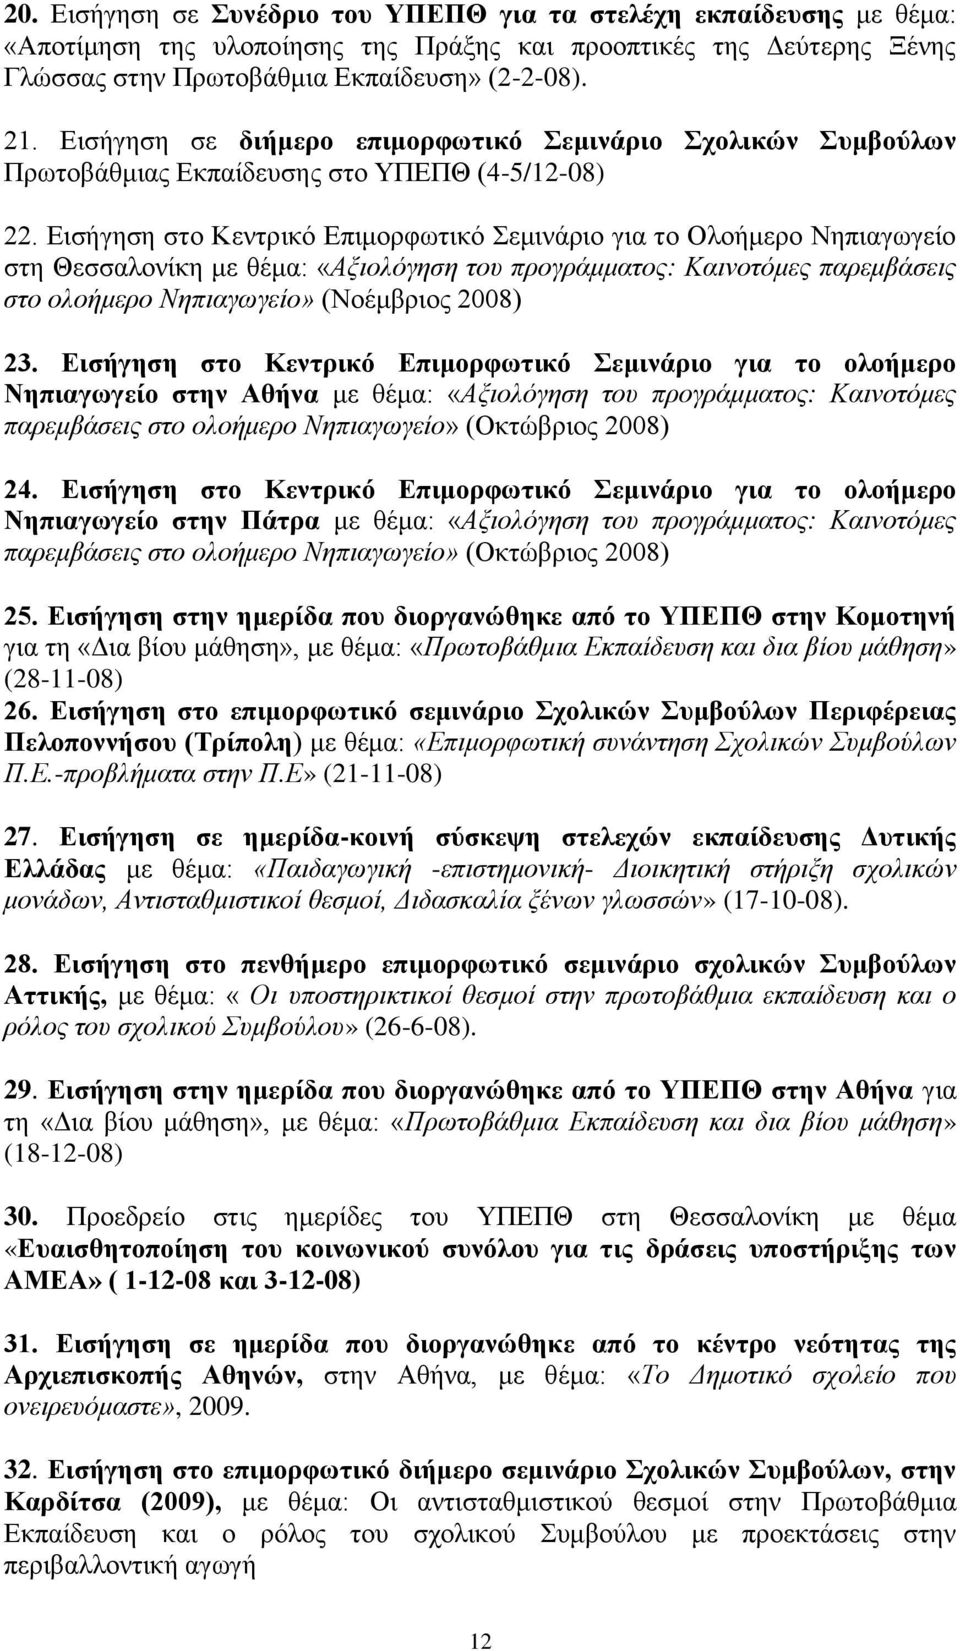 Εισήγηση στο Κεντρικό Επιμορφωτικό Σεμινάριο για το Ολοήμερο Νηπιαγωγείο στη Θεσσαλονίκη με θέμα: «Αξιολόγηση του προγράμματος: Καινοτόμες παρεμβάσεις στο ολοήμερο Νηπιαγωγείο» (Νοέμβριος 2008) 23.